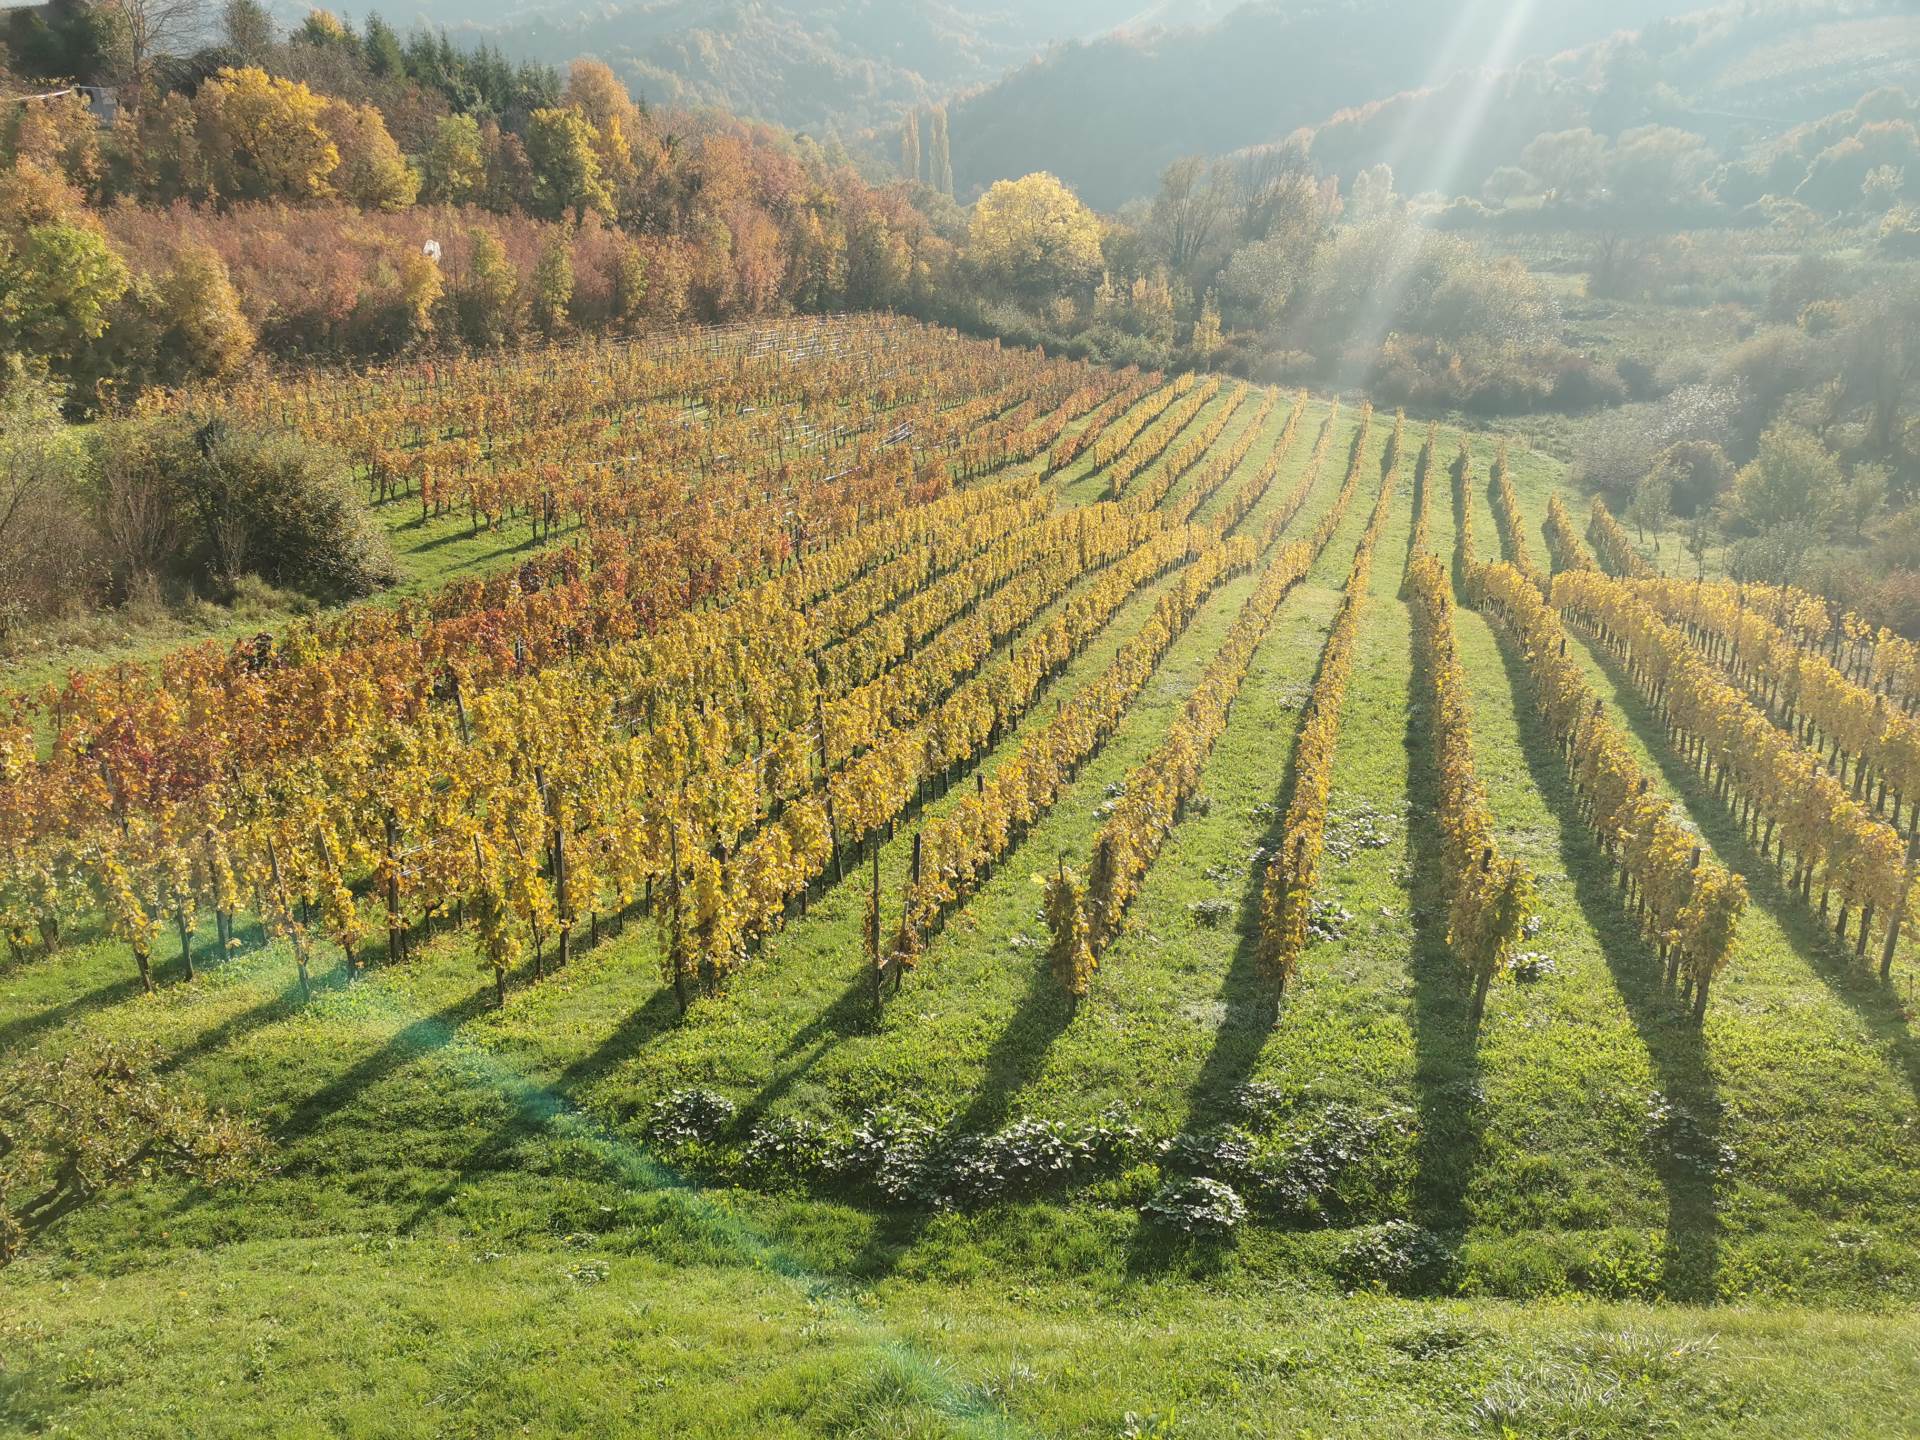 Pet vinarija sjeverozapadne Hrvatske